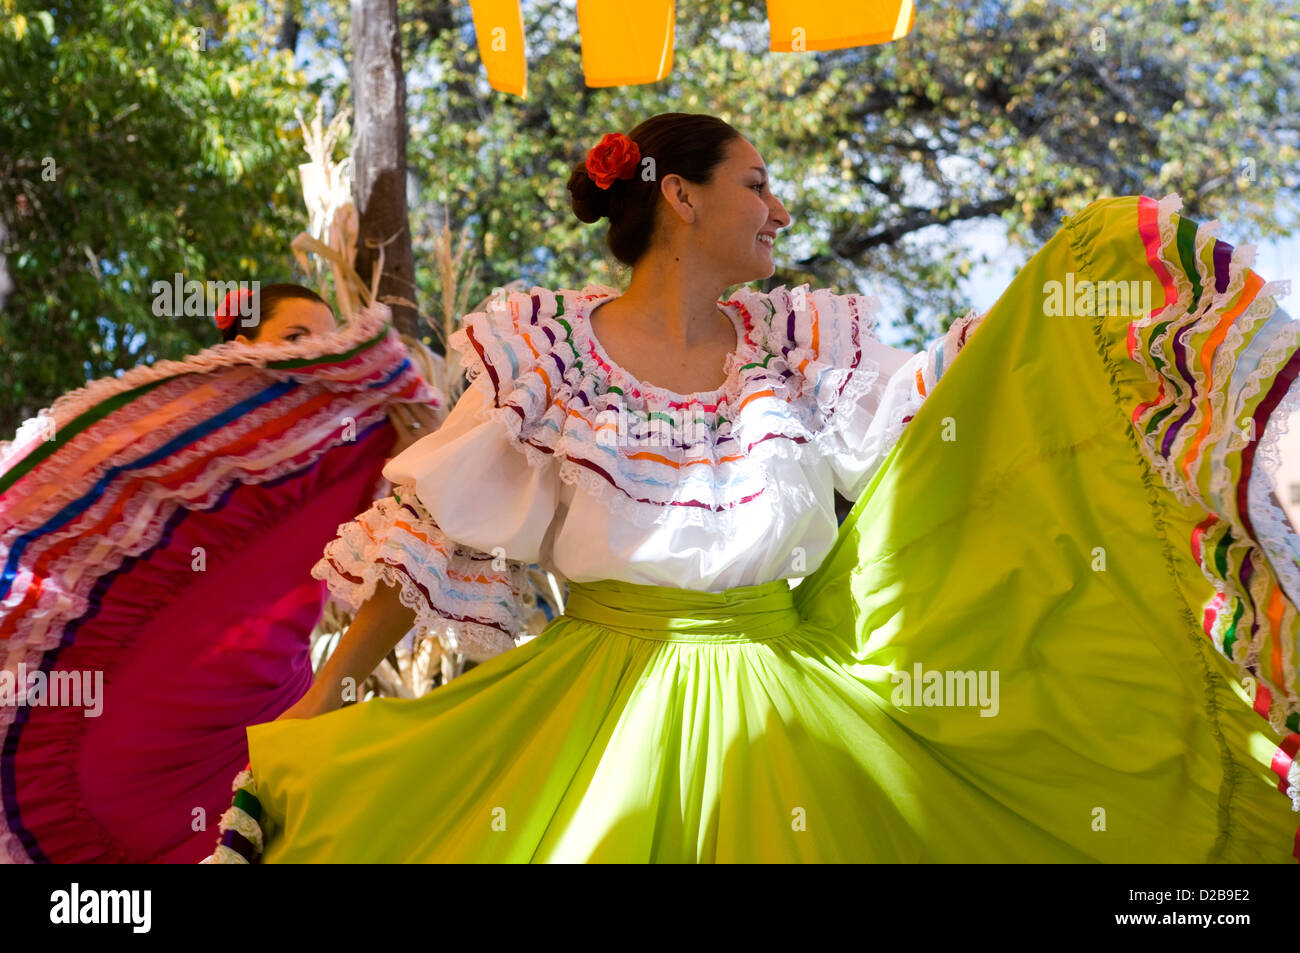 Danse folklorique mexicain El Rancho De Las Golondrinas c'est Living History Museum 18e siècle colonial espagnol au Nouveau Mexique. Banque D'Images